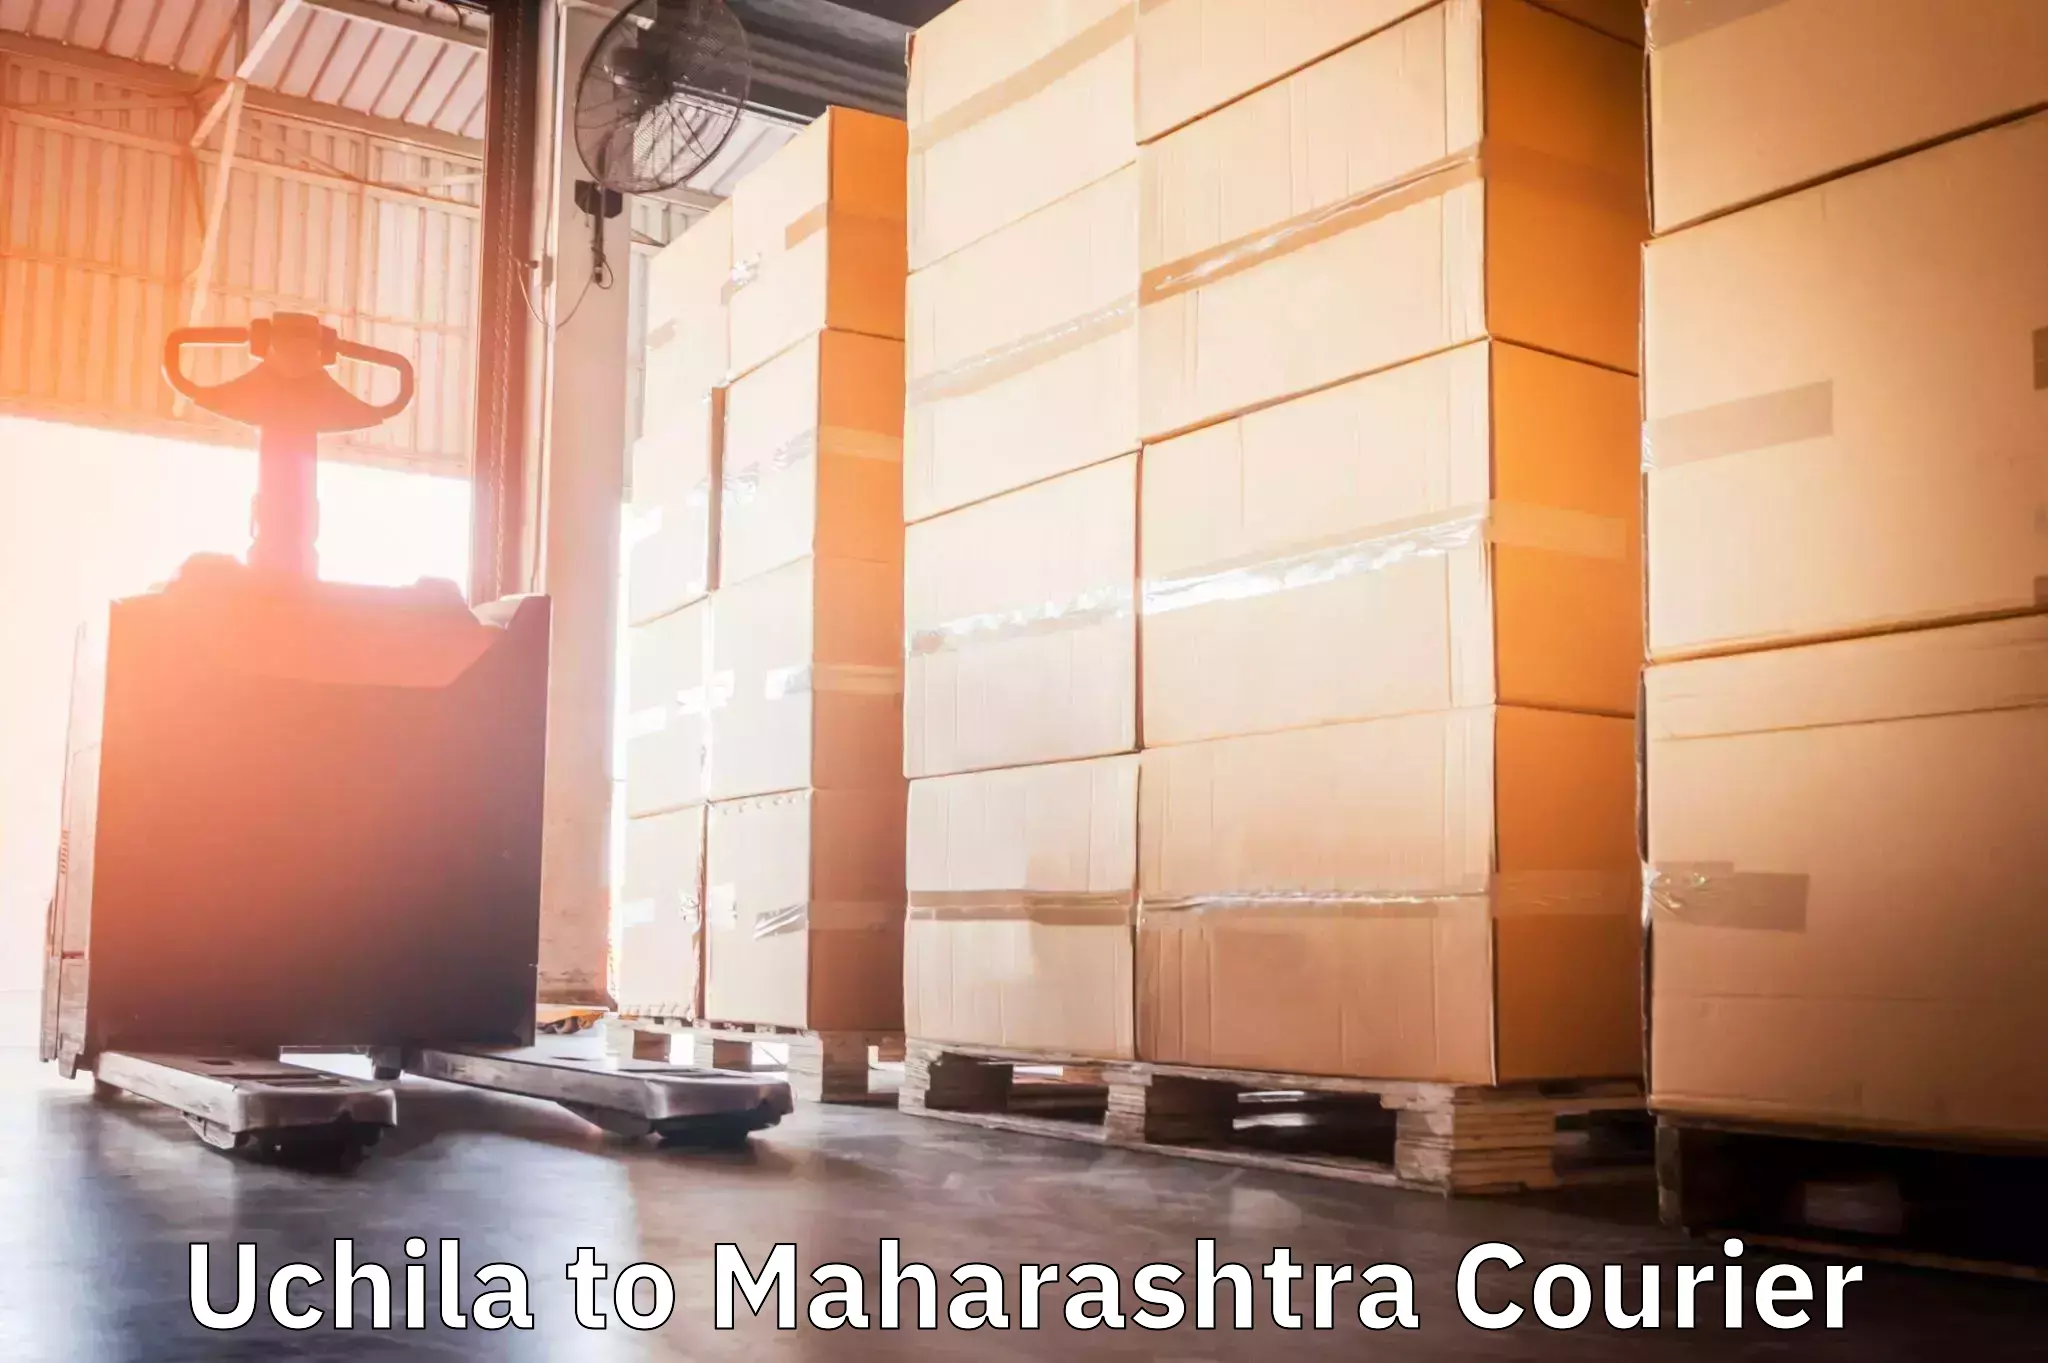 Urgent courier needs Uchila to Khandala Pune